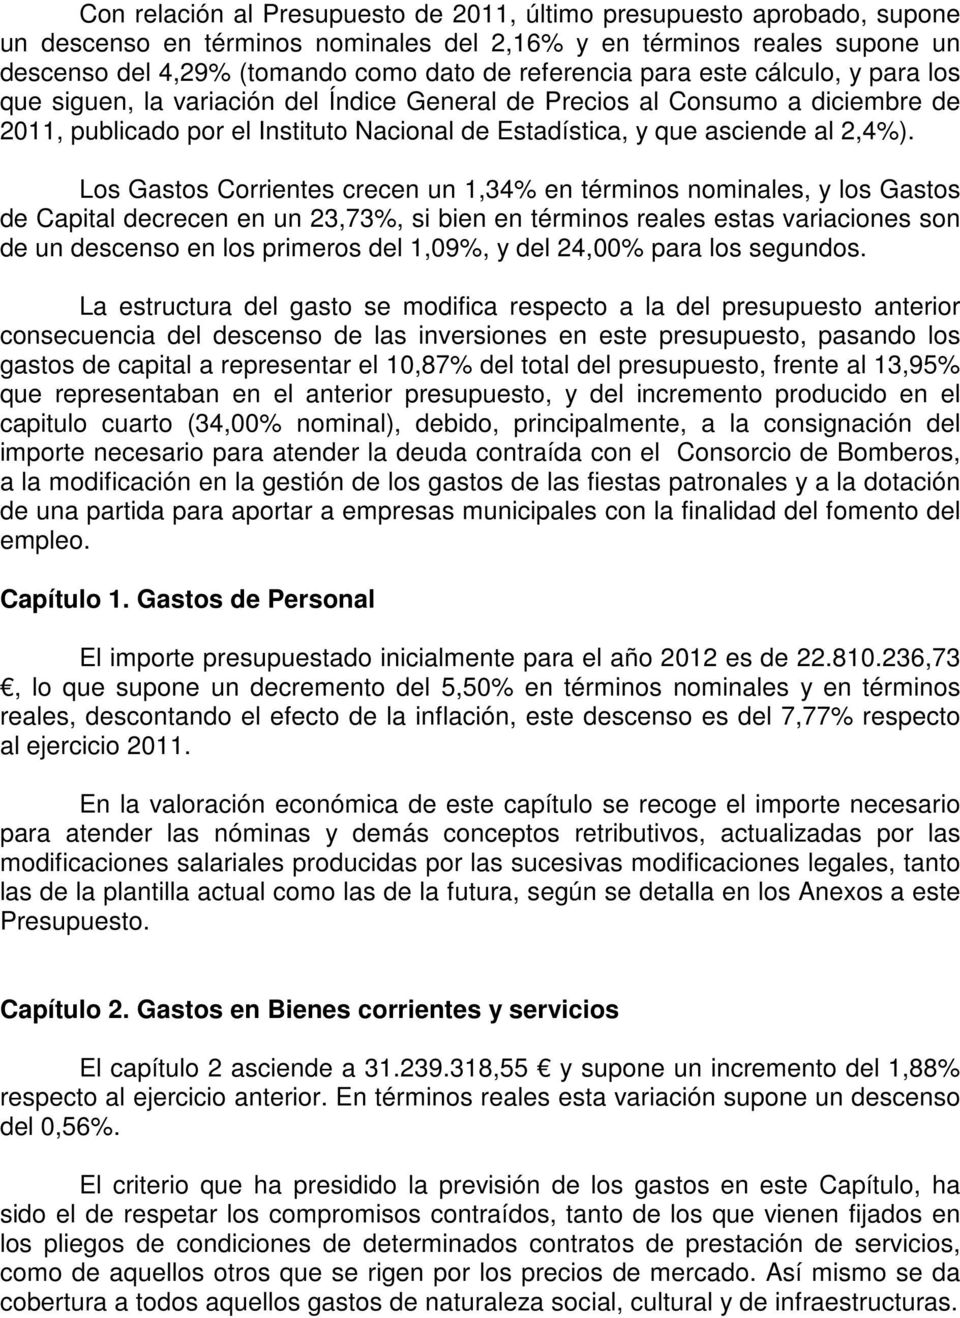 Los Gastos Corrientes crecen un 1,34% en términos nominales, y los Gastos de Capital decrecen en un 23,73%, si bien en términos reales estas variaciones son de un descenso en los primeros del 1,09%,